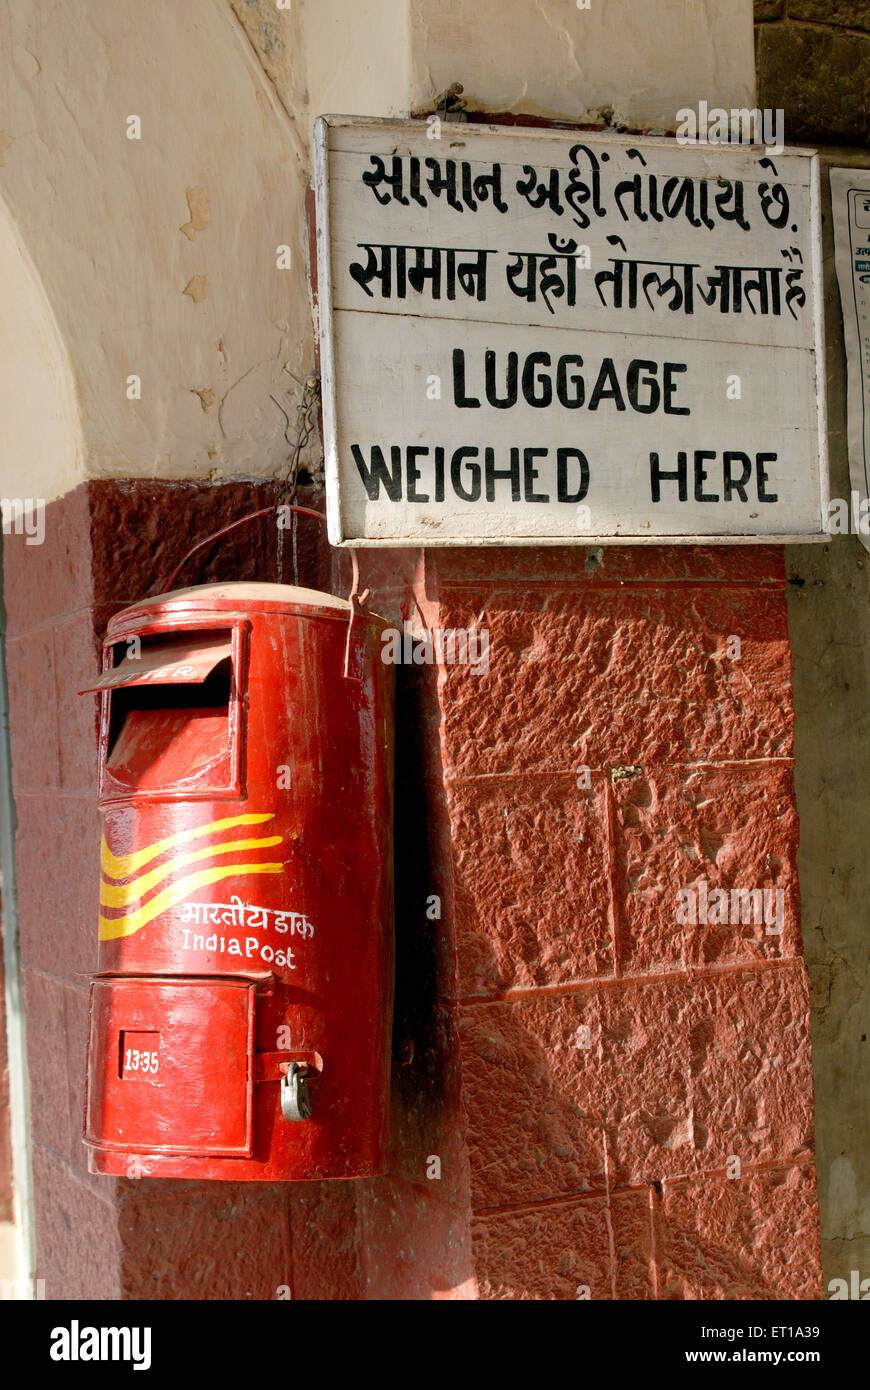 La boîte postale rouge et les bagages pesaient ici à bord, jonction de Dhola, Gujarat, Inde Banque D'Images